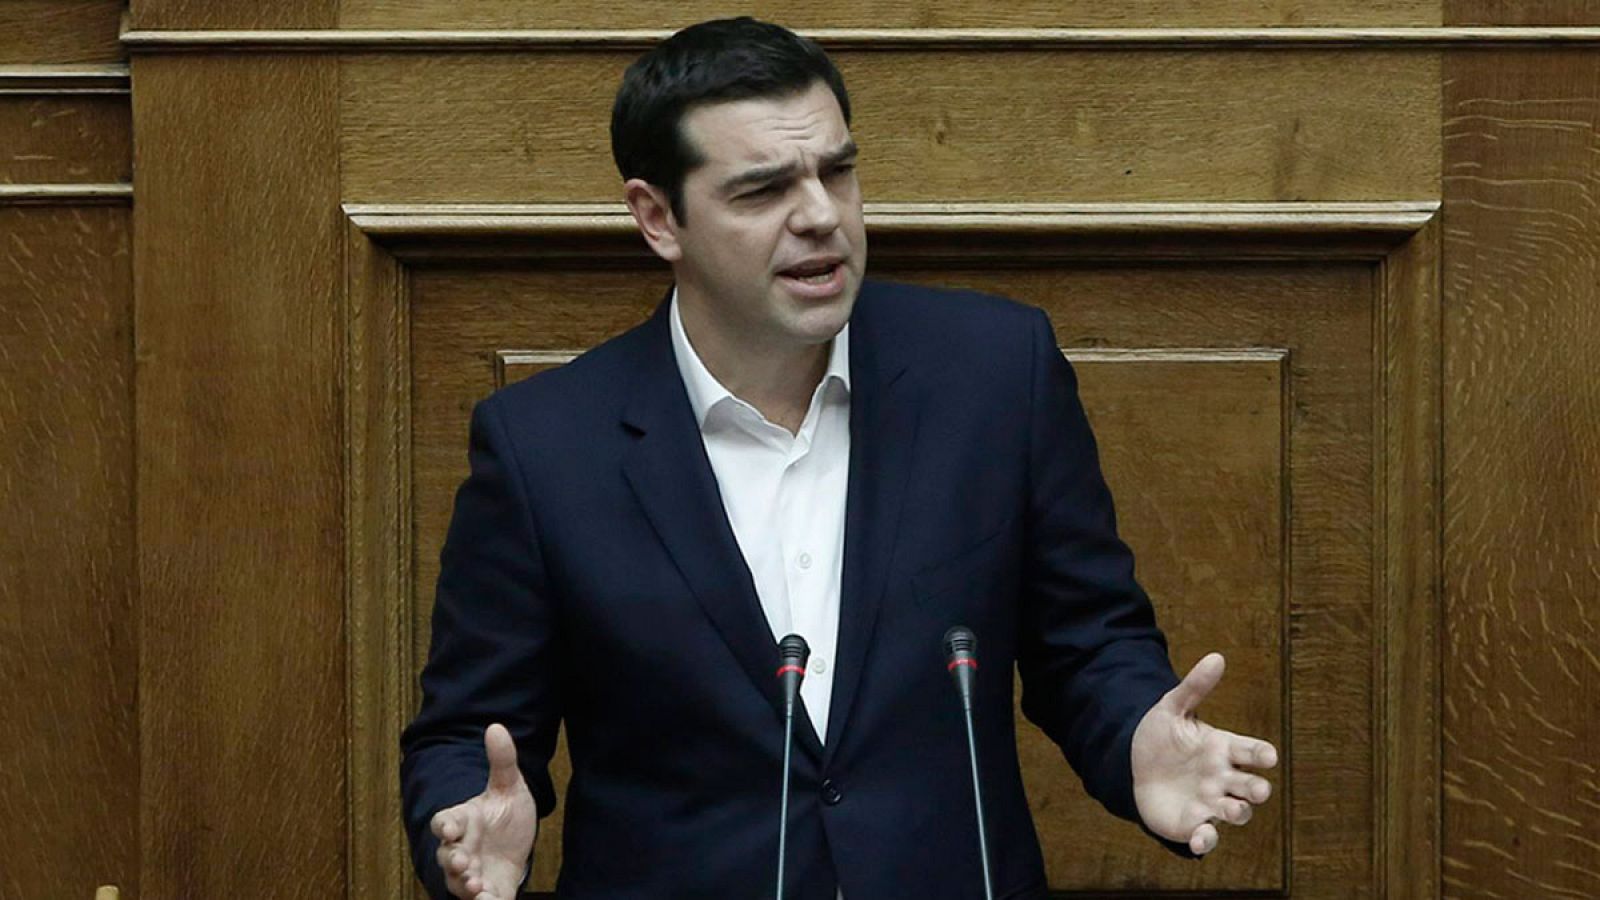 El primer ministro griego, Alexis Tsipras en el Parlamento durante la votación de los presupuestos el pasado sábado 5 de diciembre